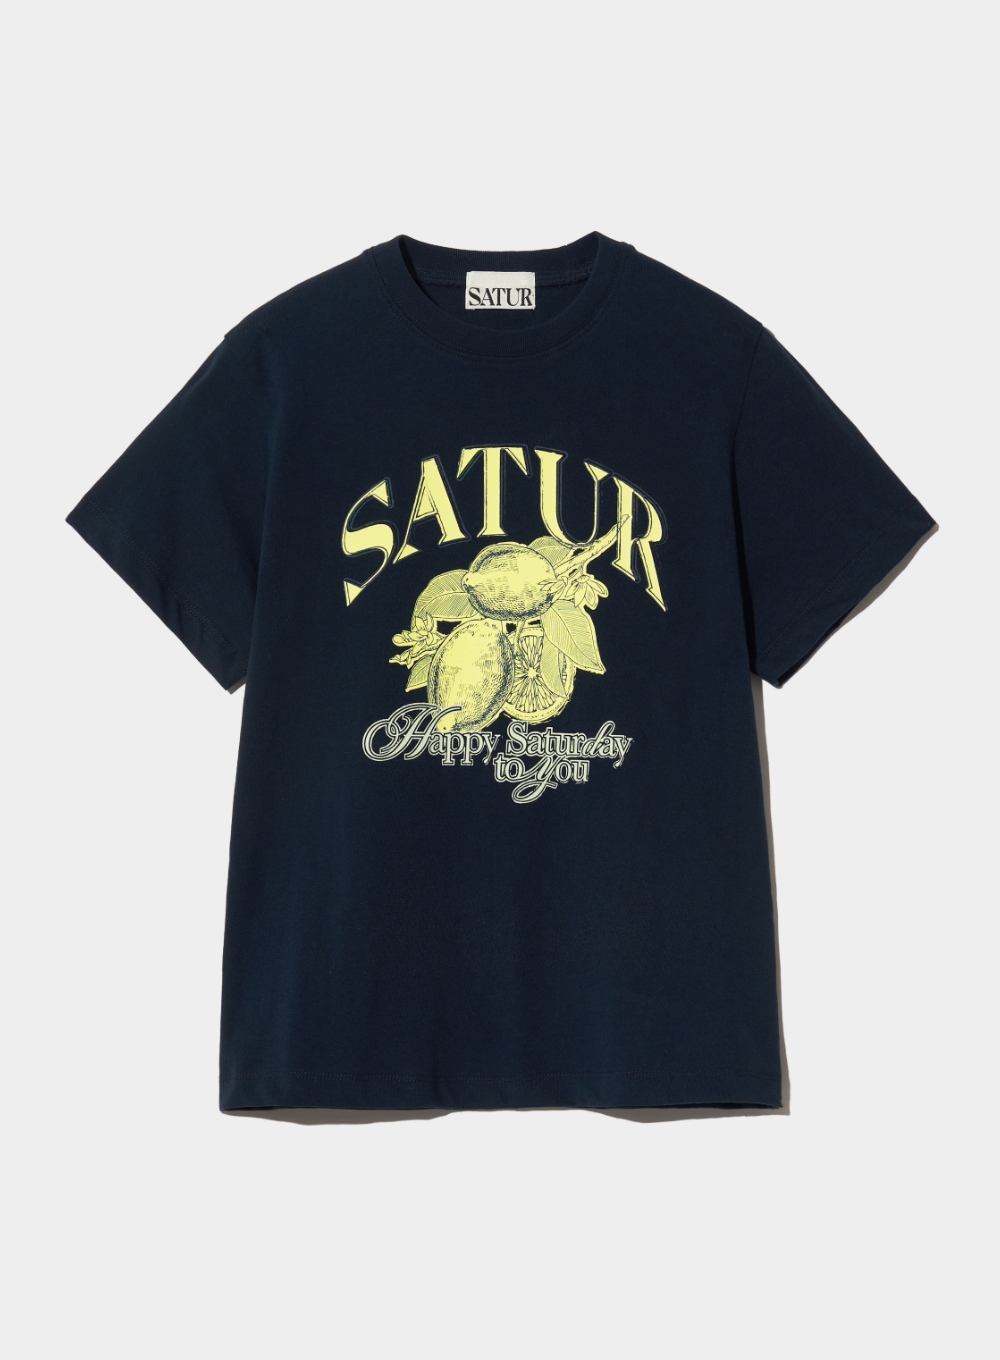 [6월 17일 예약배송] (W) Citron Summer Graphic T-Shirt - Sunset Navy